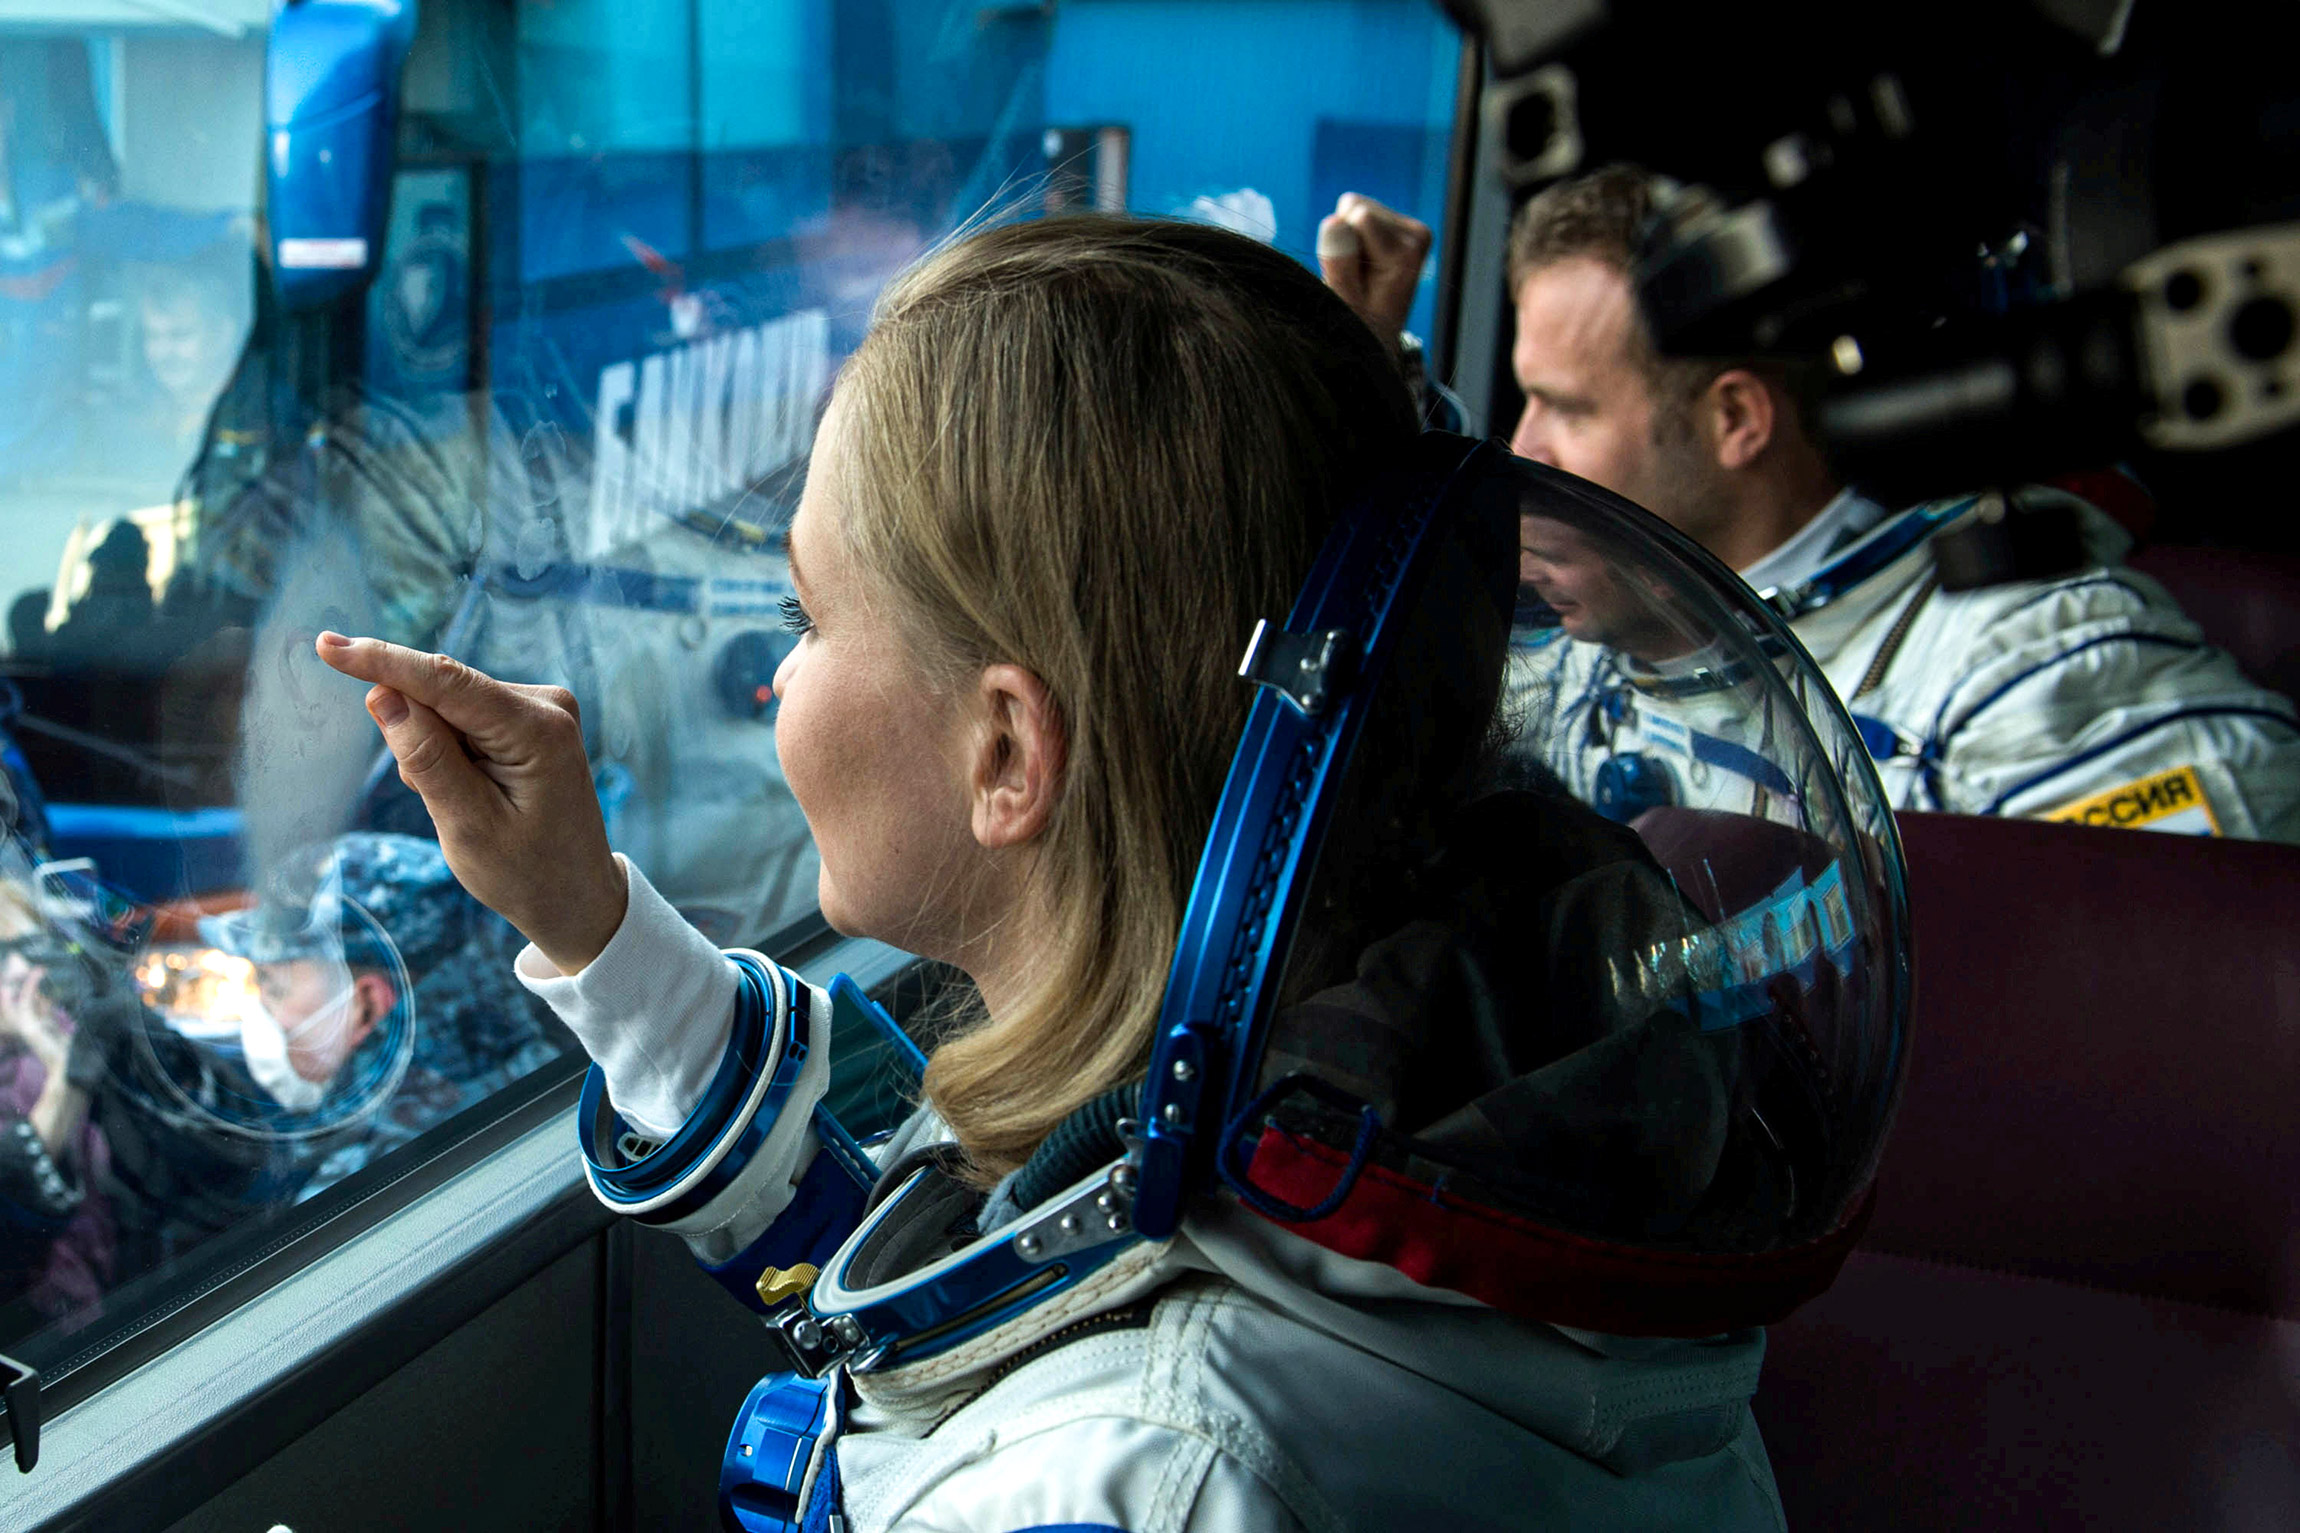 2021-й стал годом начала космического и орбитального туризма: компании Джеффа Безоса Blue Origin и Илона Маска SpaceX впервые&nbsp;&mdash; 20 июля и 16 сентября&nbsp;&mdash; запустили в космос корабли с полностью гражданскими экипажами. Безос был в составе первой экспедиции. Опередил коллег-миллиардеров глава Virgin Galactic Ричард Брэнсон, совершивший суборбитальный полет 11 июля.

За прошедшие полгода в космосе или околокосмическом пространстве побывали 90-летний актер из сериала &laquo;Стартрек&raquo; Уильям Шетнер, ведущий телешоу Good Morning America на канале ABC Майкл Страхан, старшая дочь первого астронавта Алана Шепарда Лора Шепард Чарчли, а также ветераны NASA и&nbsp;&mdash; в качестве платных туристов&nbsp;&mdash; бизнесмены, инвесторы и члены их семей.

В России в космос отправили актрису Юлию Пересильд и режиссера Клима Шипенко: они с 5 по 17 октября снимали на борту Международной космической станции художественный фильм &laquo;Вызов&raquo;, который стал первой в мире картиной, снятой в космосе